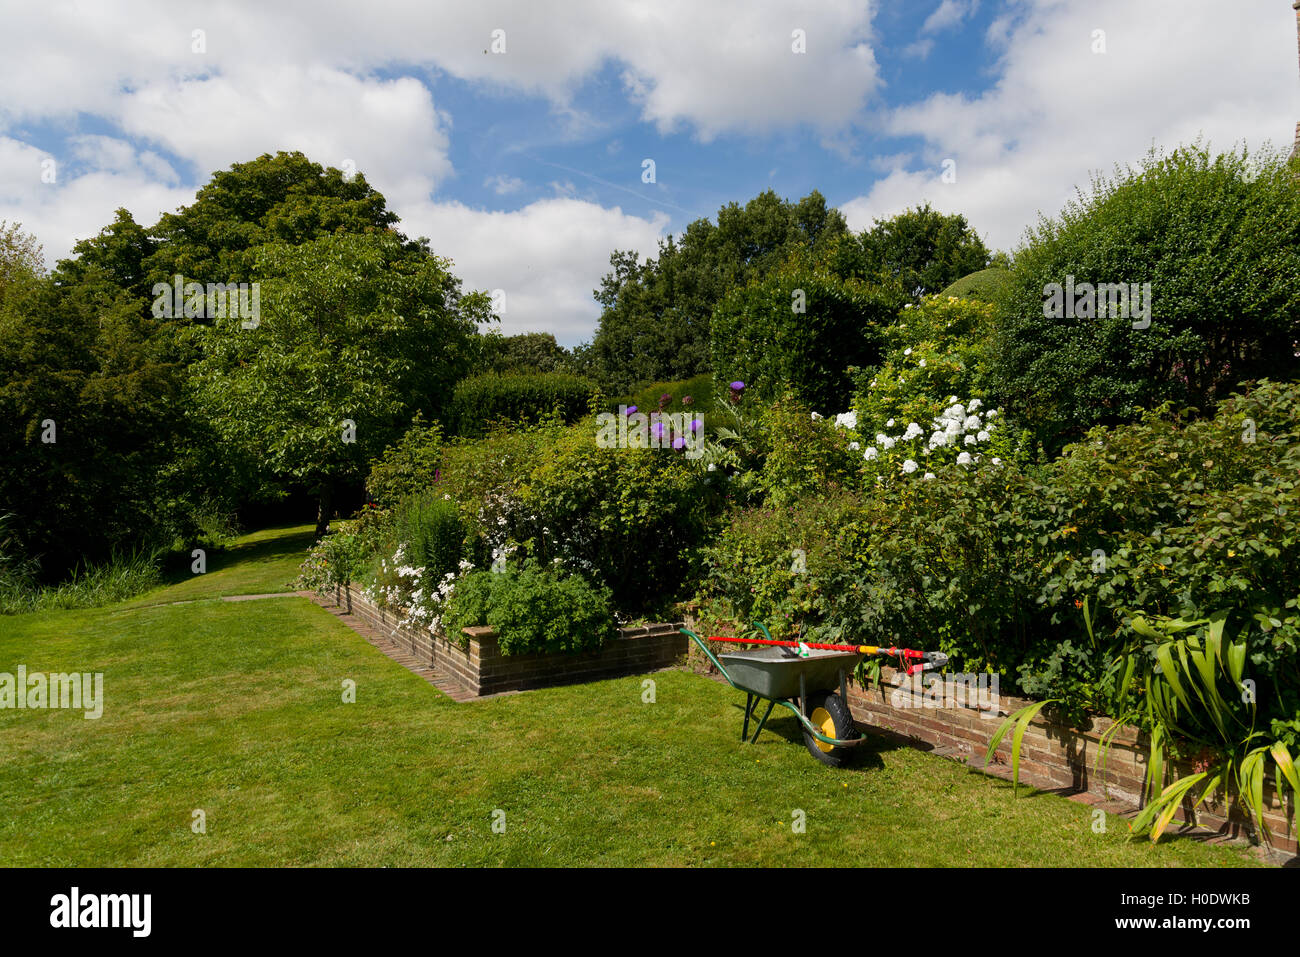 Schubkarre und Beschneiden Werkzeug in einem englischen Garten. Sommer Blick auf grünen Garten. Stockfoto